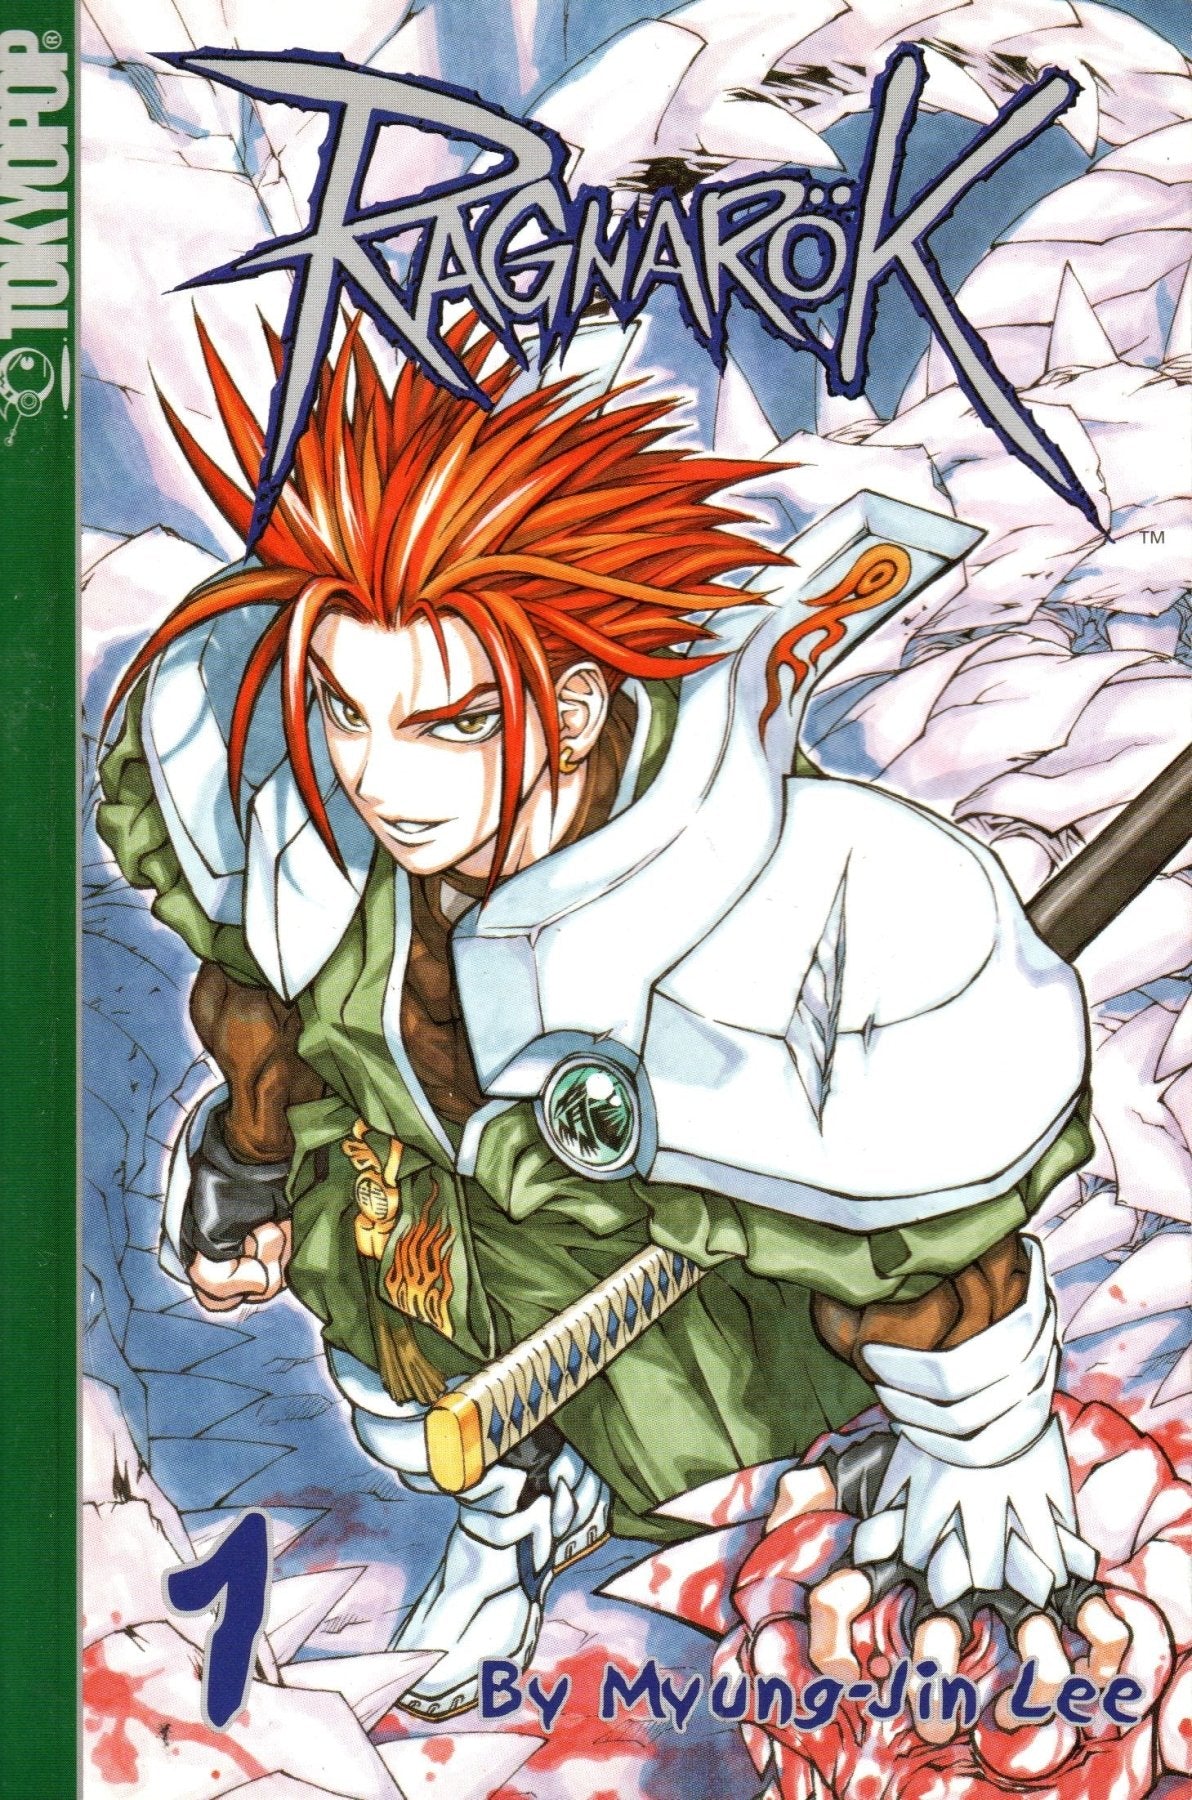 Ragnarok Vol. 1 - Manga - Retro Island Gaming